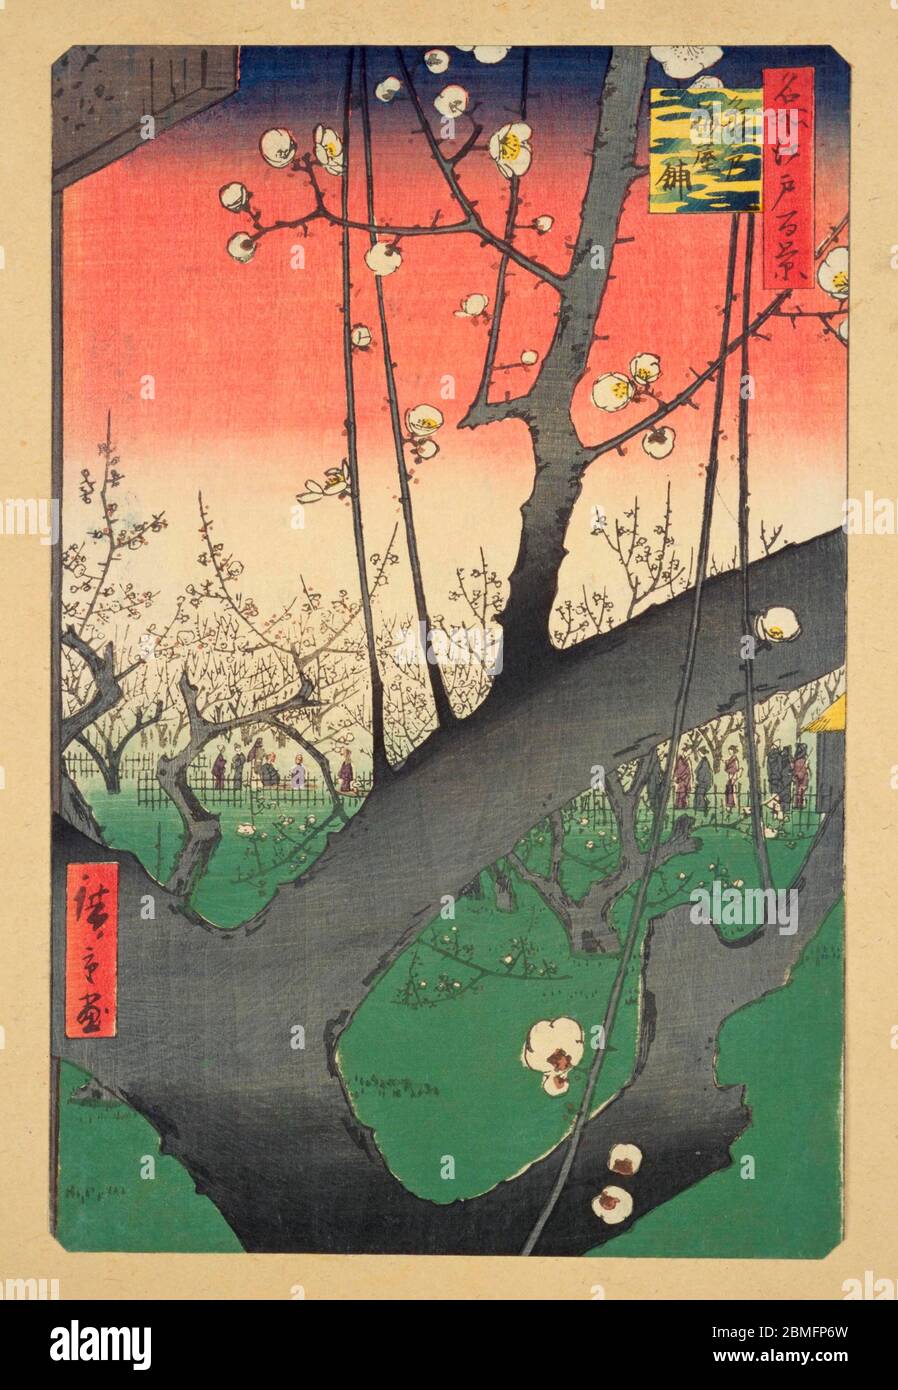 [ 1850er Japan - Japanische Pflaumenblüte ] - Pflaumenblüte bei Umeyashiki, einem Pflaumengarten am Ufer des Sumidagawa Flusses in Kameido, Edo (heute Tokio).1857 (Ansei 4). Dies ist eine der Hiroshige-Drucke, die der niederländische Maler Vincent Van Gogh (1853–1890) in Kopien gemalt hat, um die Elemente zu studieren, die er in japanischen Holzschnitten bewunderte. Dieser Holzschnitt ist Bild 30 in hundert berühmten Ansichten von Edo (名所江戸百景, Meisho Edo Hyakkei), einer Serie von Ukiyoe Künstler Utagawa Hiroshige (歌川広重, 1797–1858) erstellt. Es ist eine von 42 Frühlingsszenen der Serie. Titel: Pflaumenpark in Kameido (亀戸梅屋舗, Kamei Stockfoto